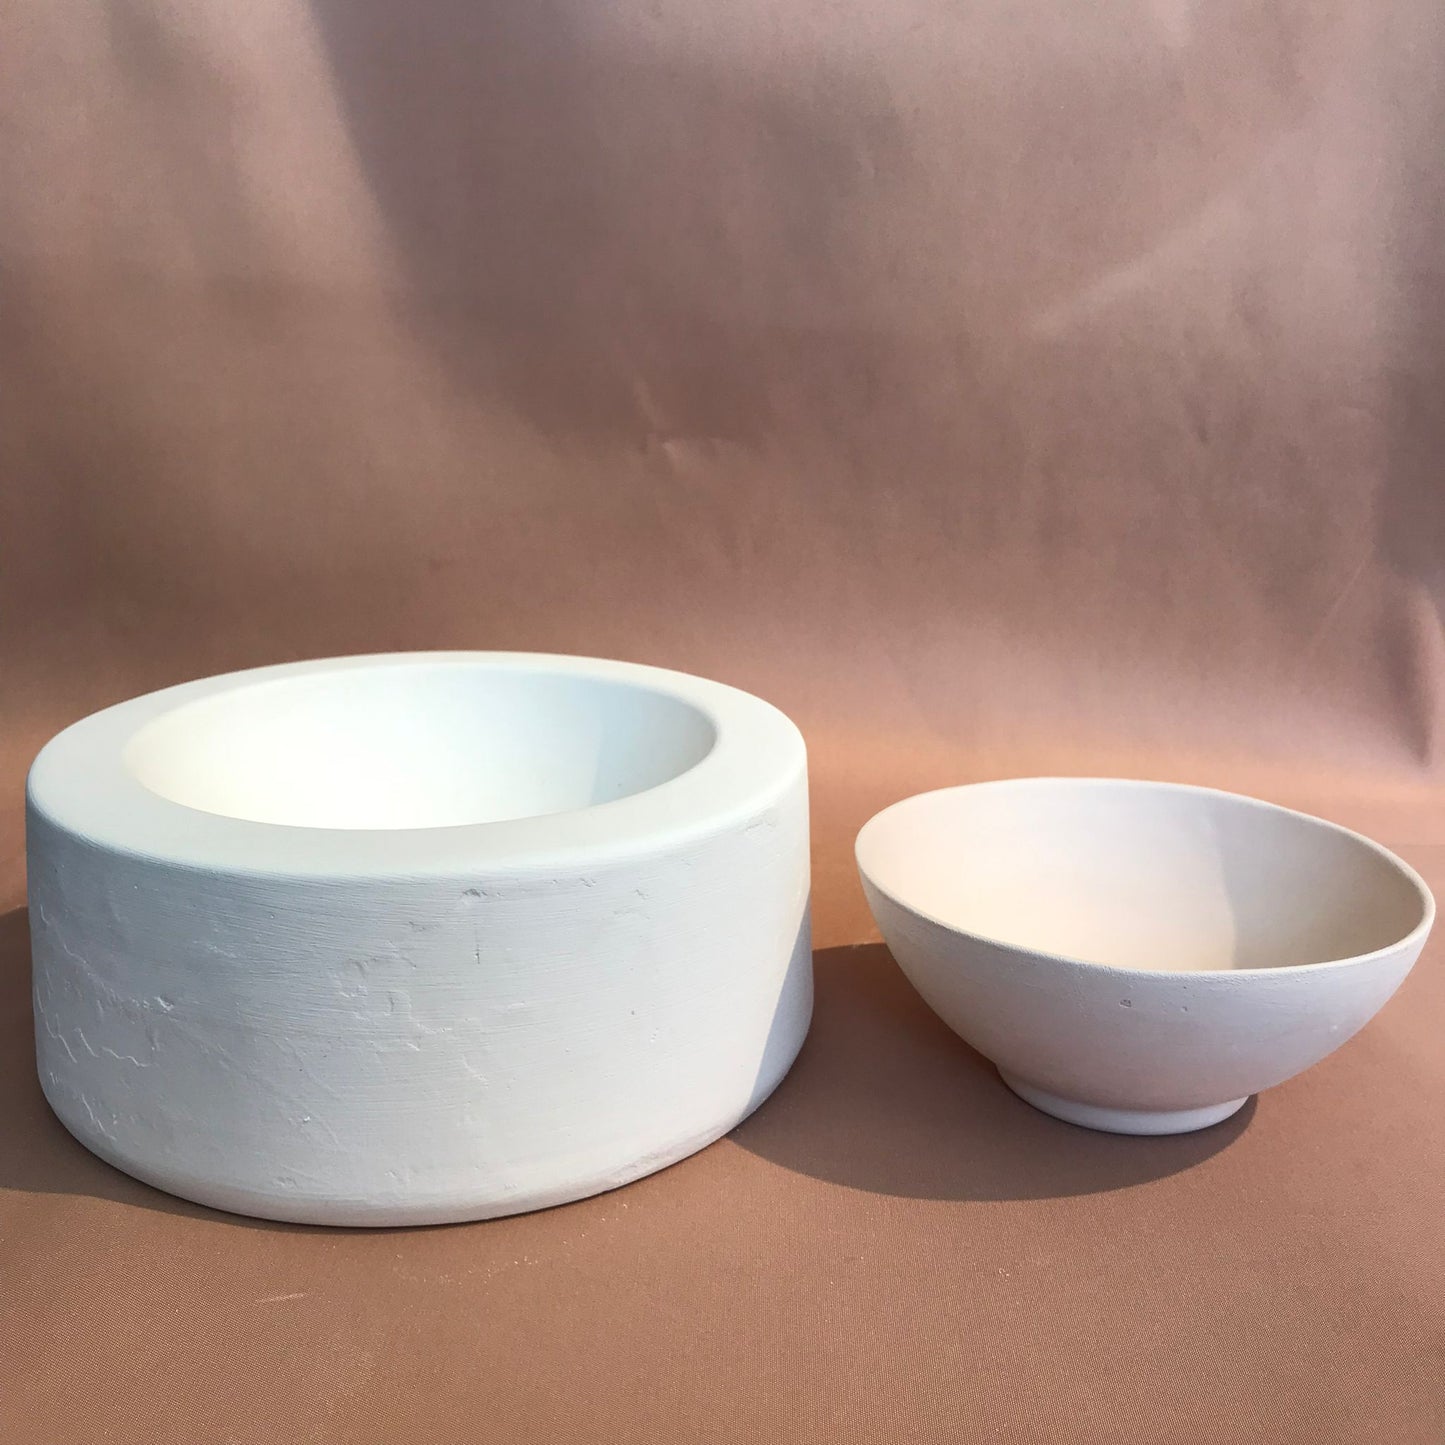 EK099 - Rim Glazed Bowl Mold 12.5x5.5cm